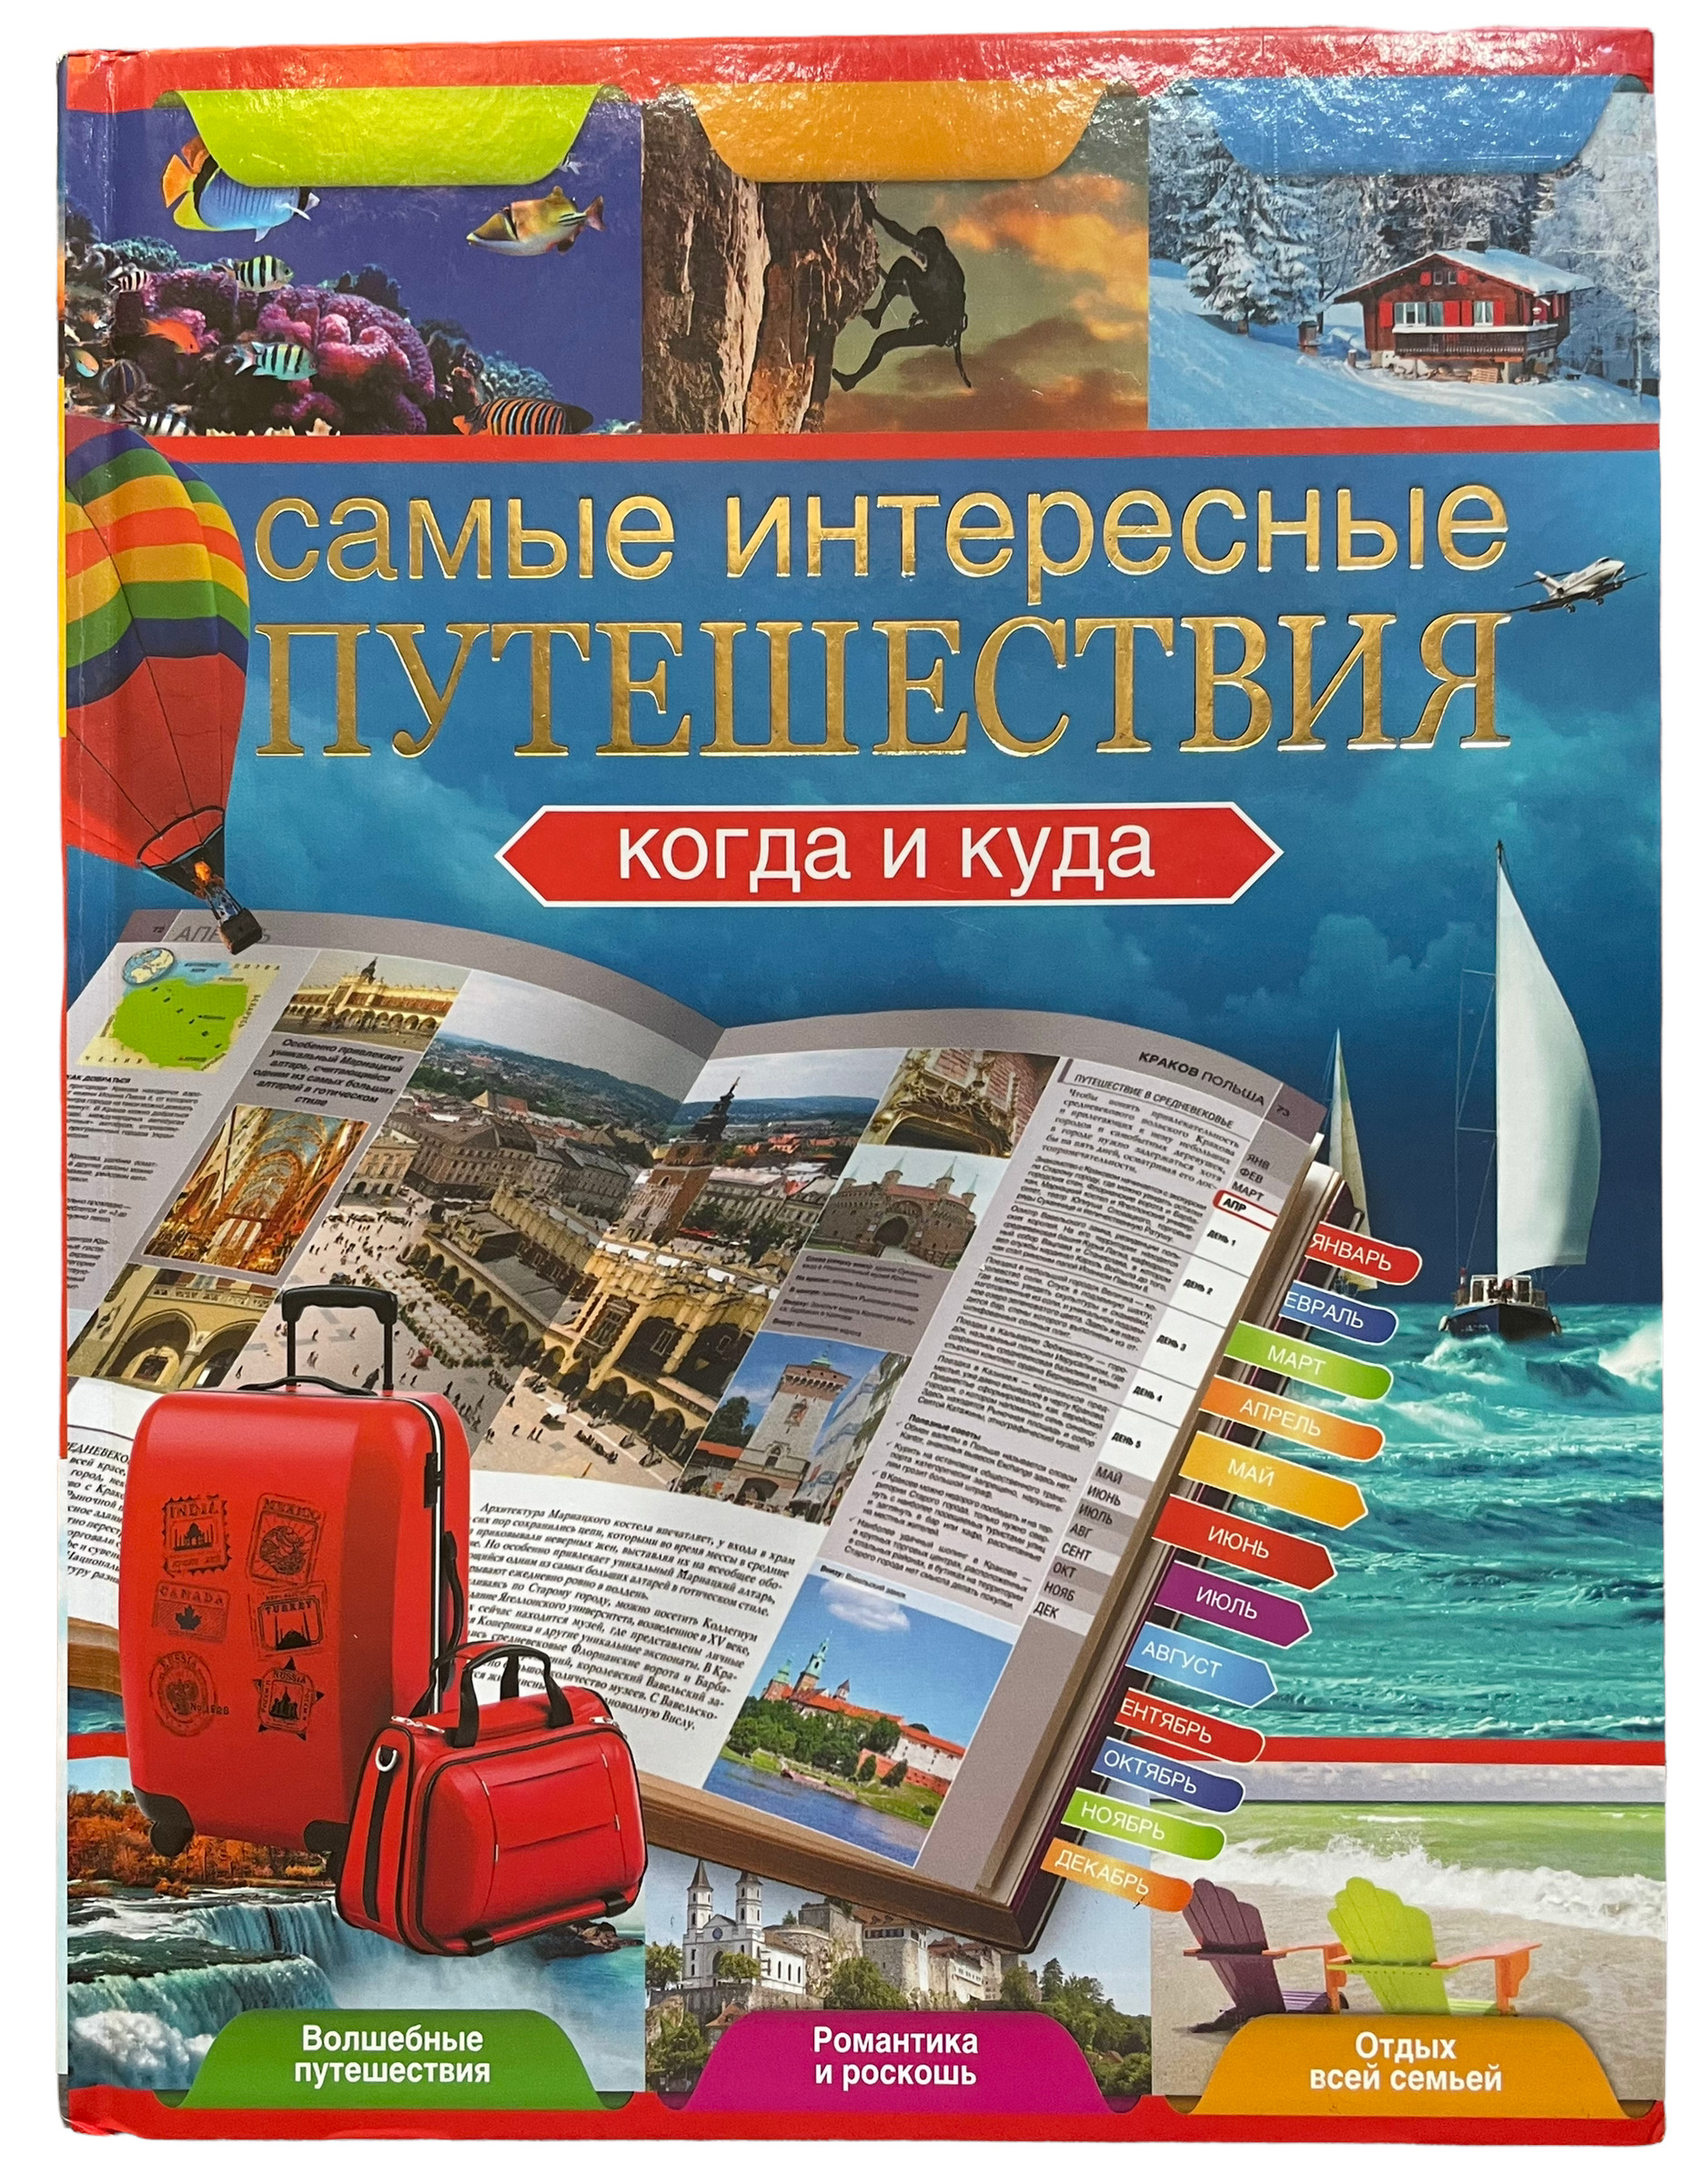 Отправьтесь юные читатели в мир увлекательных путешествий. Книга путешествия. Книжка про путешествия. Интересные книги про путешествия. Книги о путешествиях для детей.